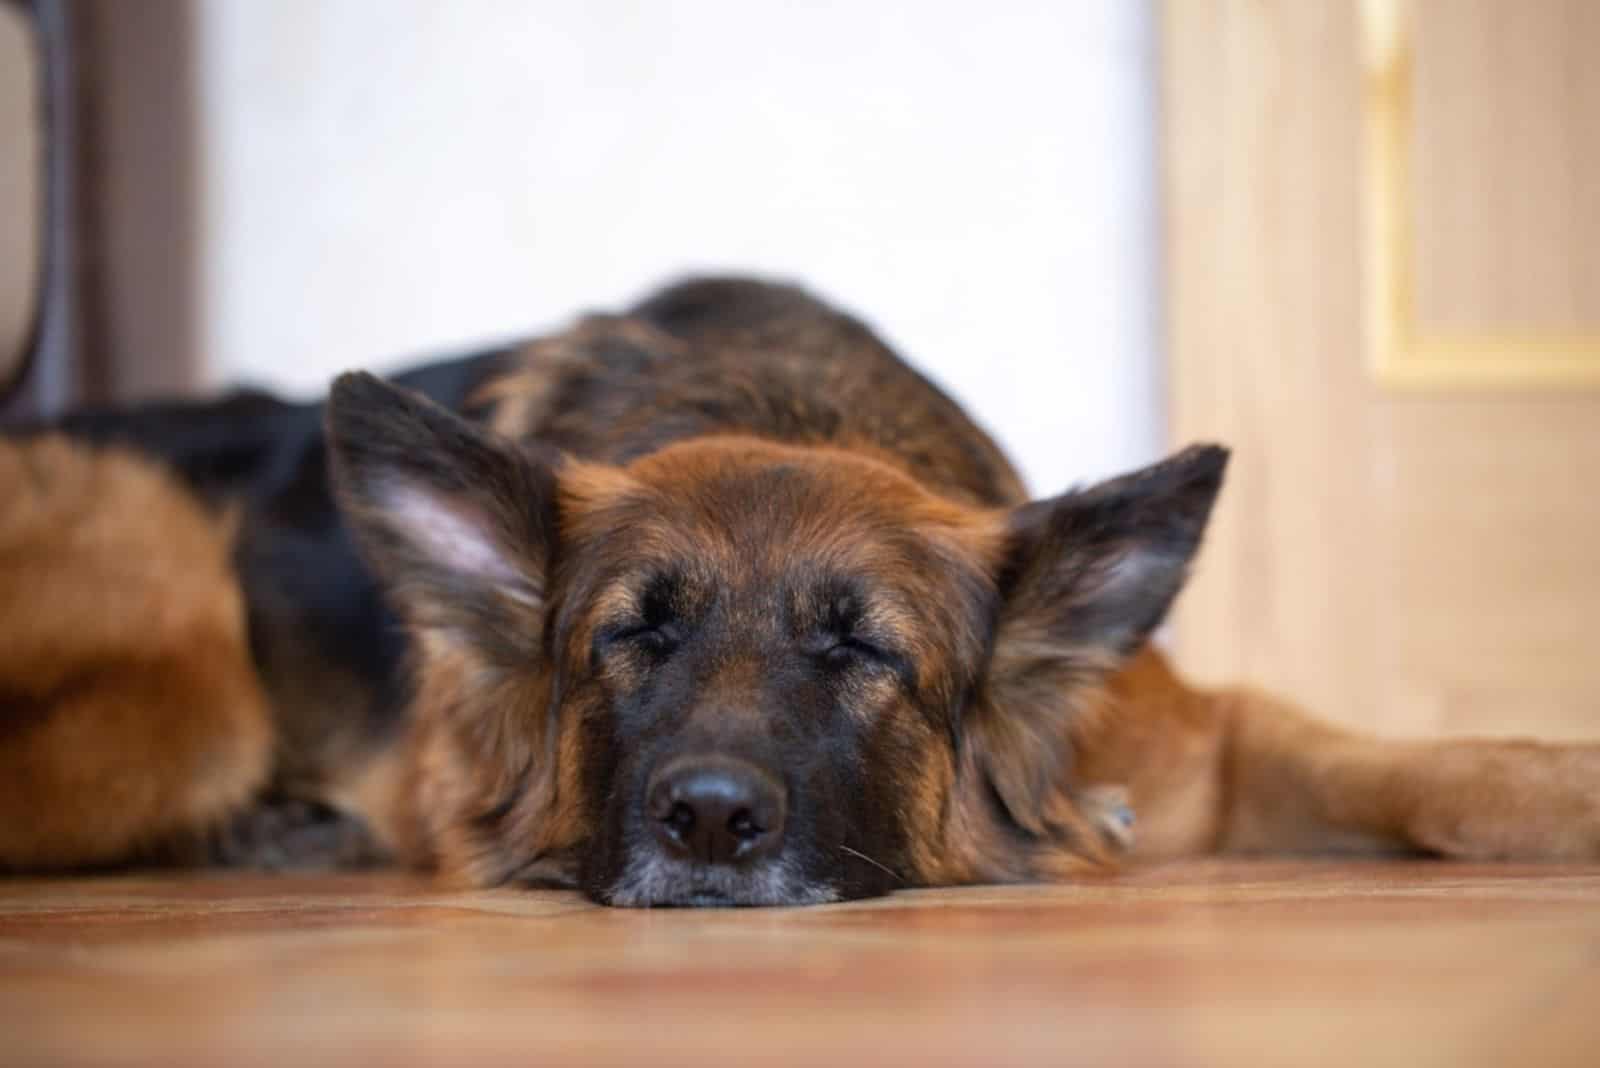 german shepherd dog with long hair is sleeping on the floor